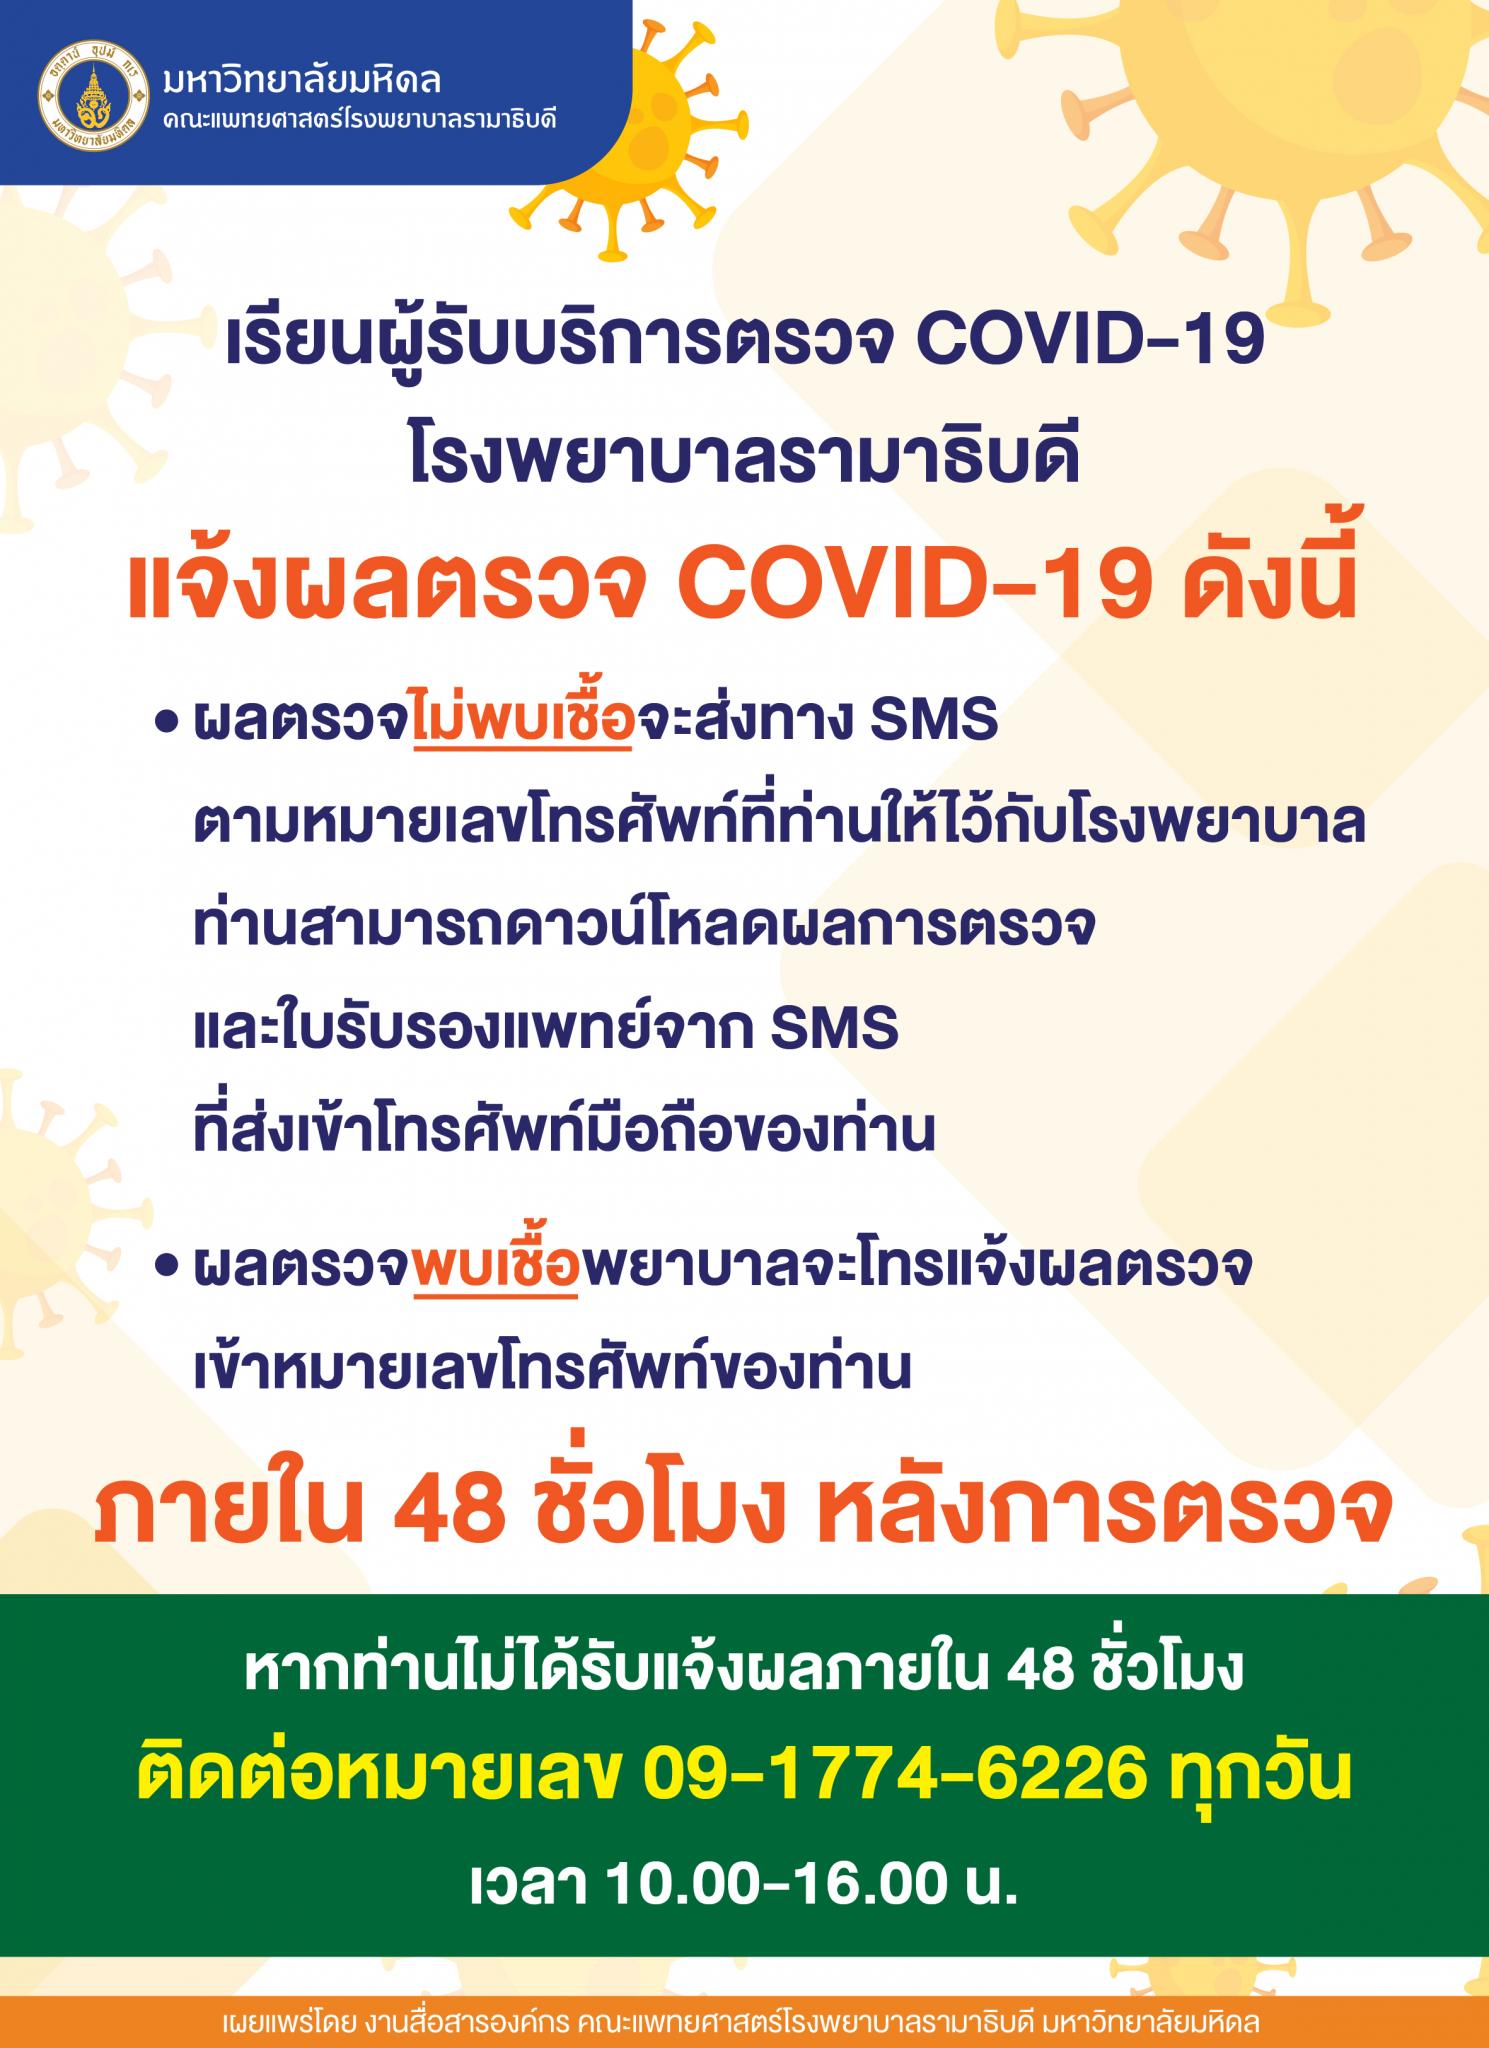 เรียนผู้รับบริการตรวจ COVID-19 โรงพยาบาลรามาธิบดี เรื่อง แจ้งผลตรวจ COVID-19